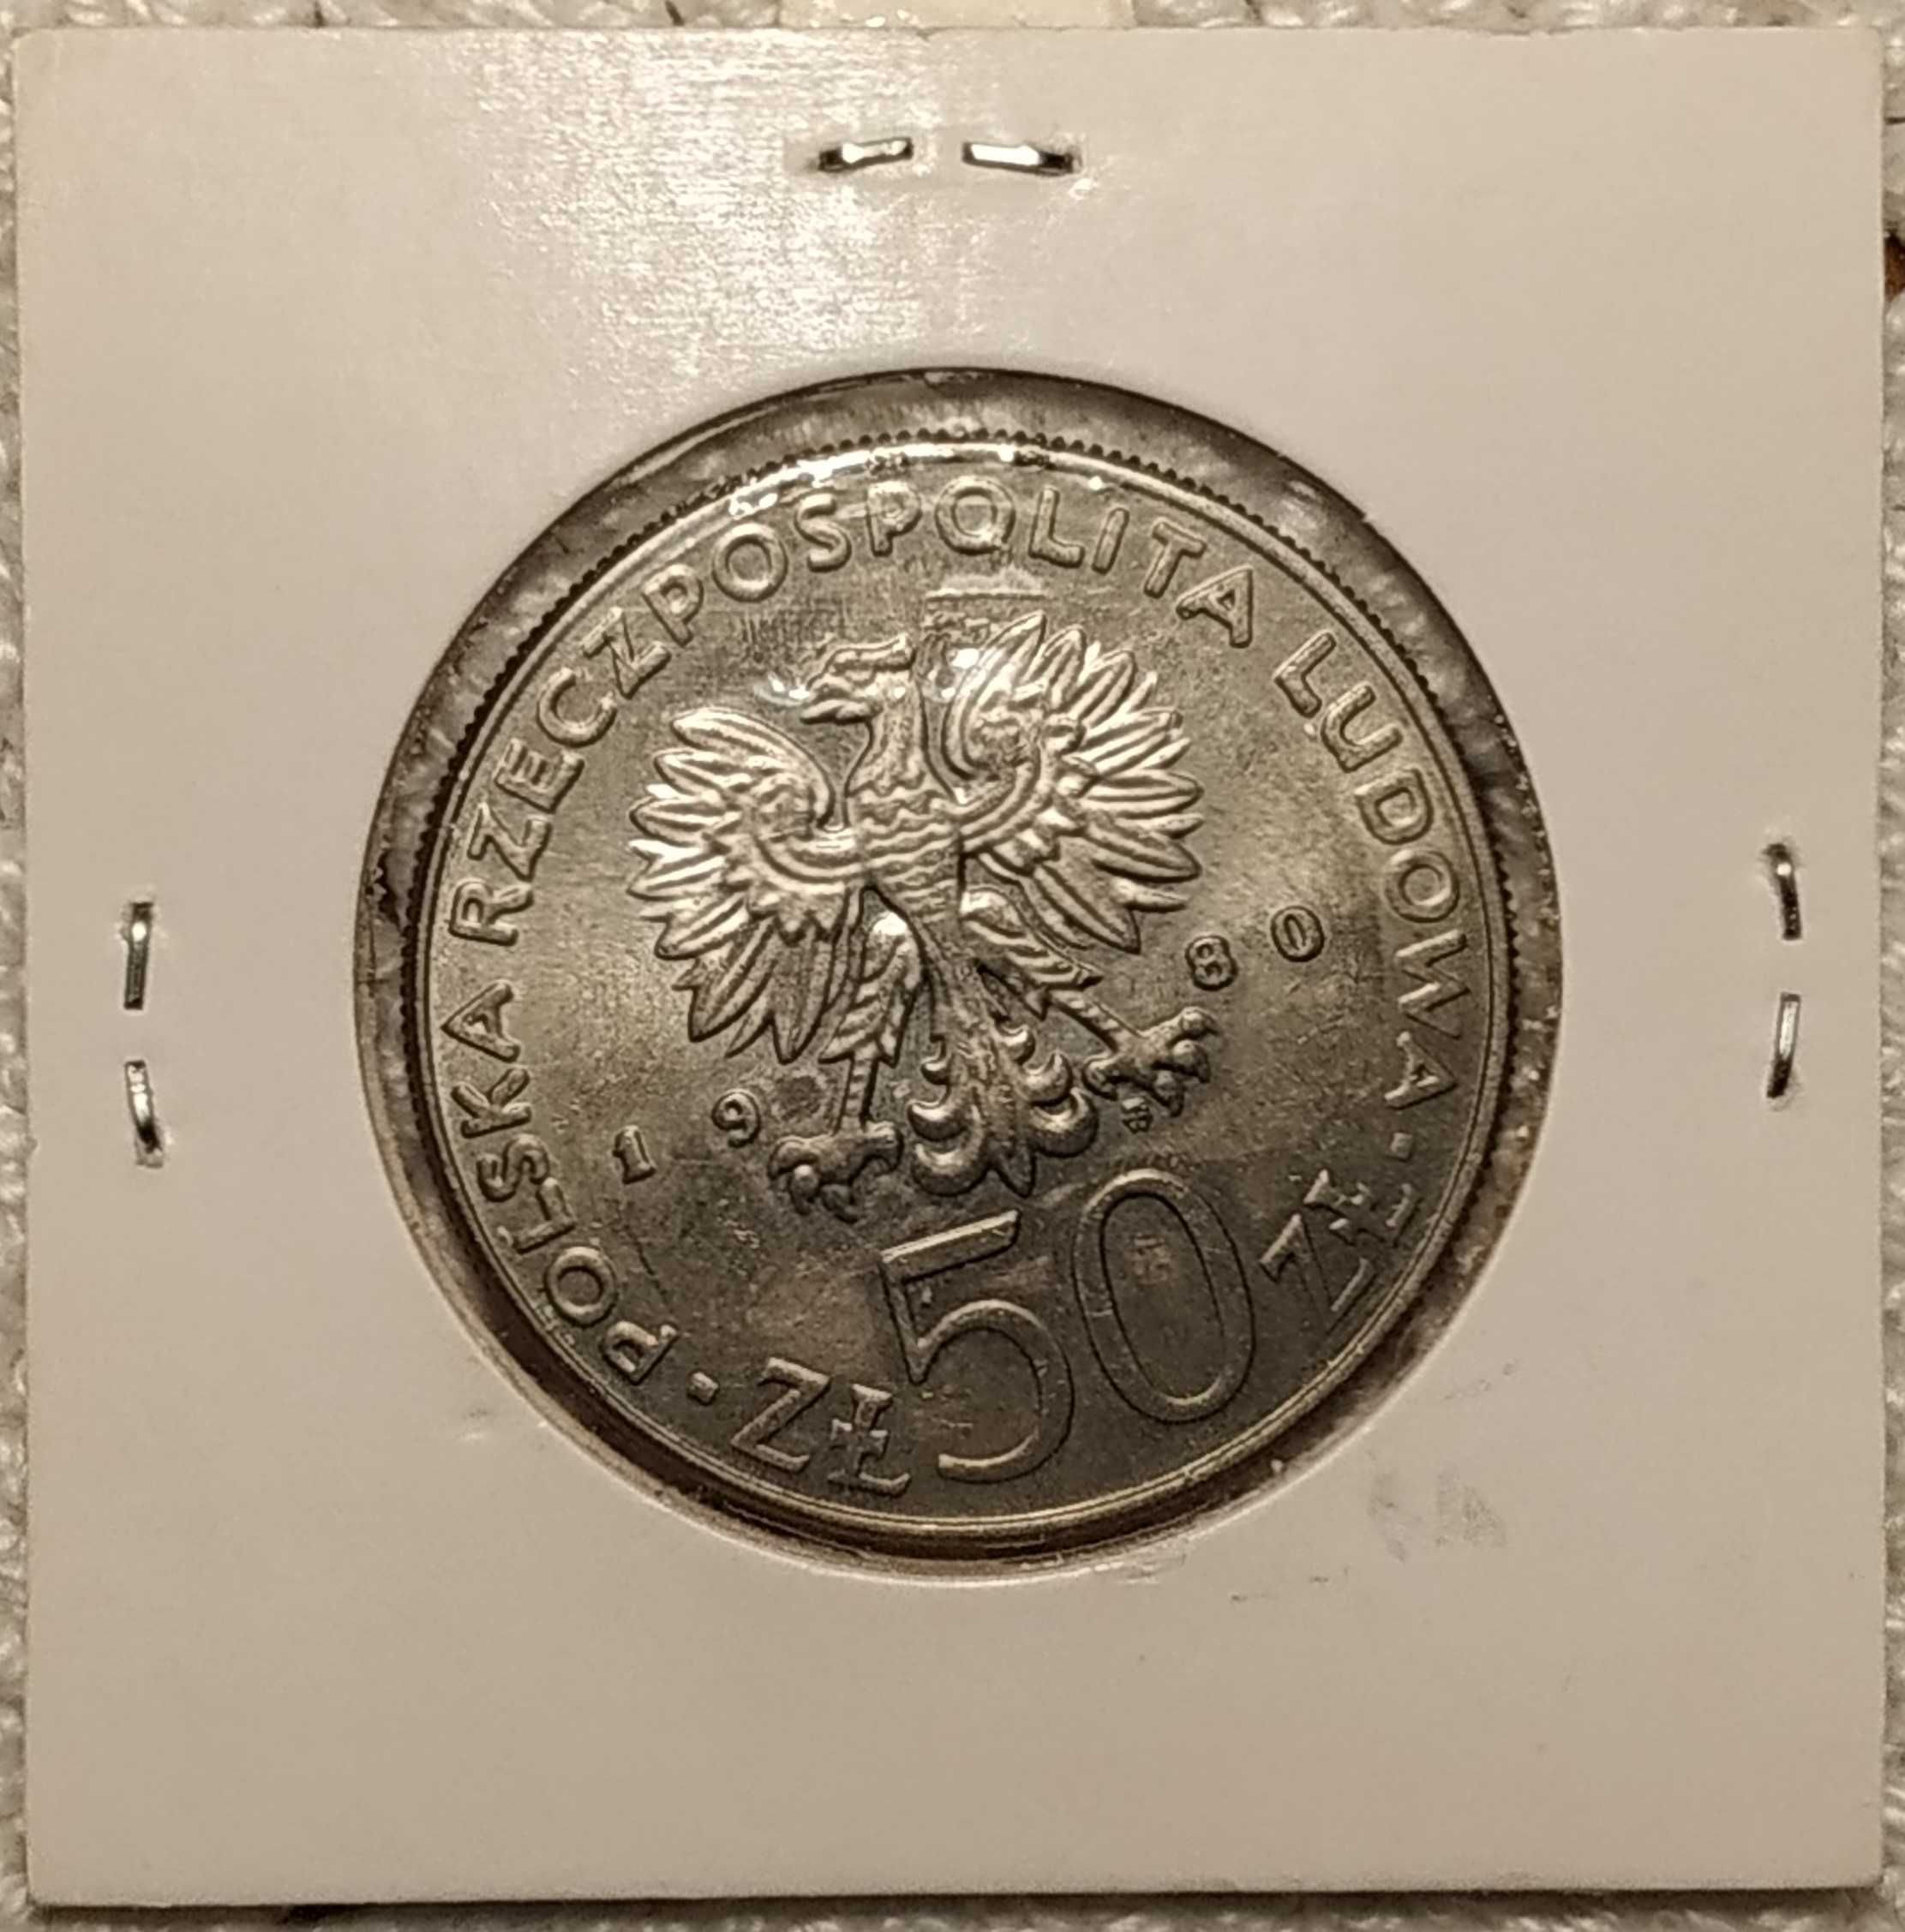 Polónia - moeda de 50 zlotych de 1980 km 114